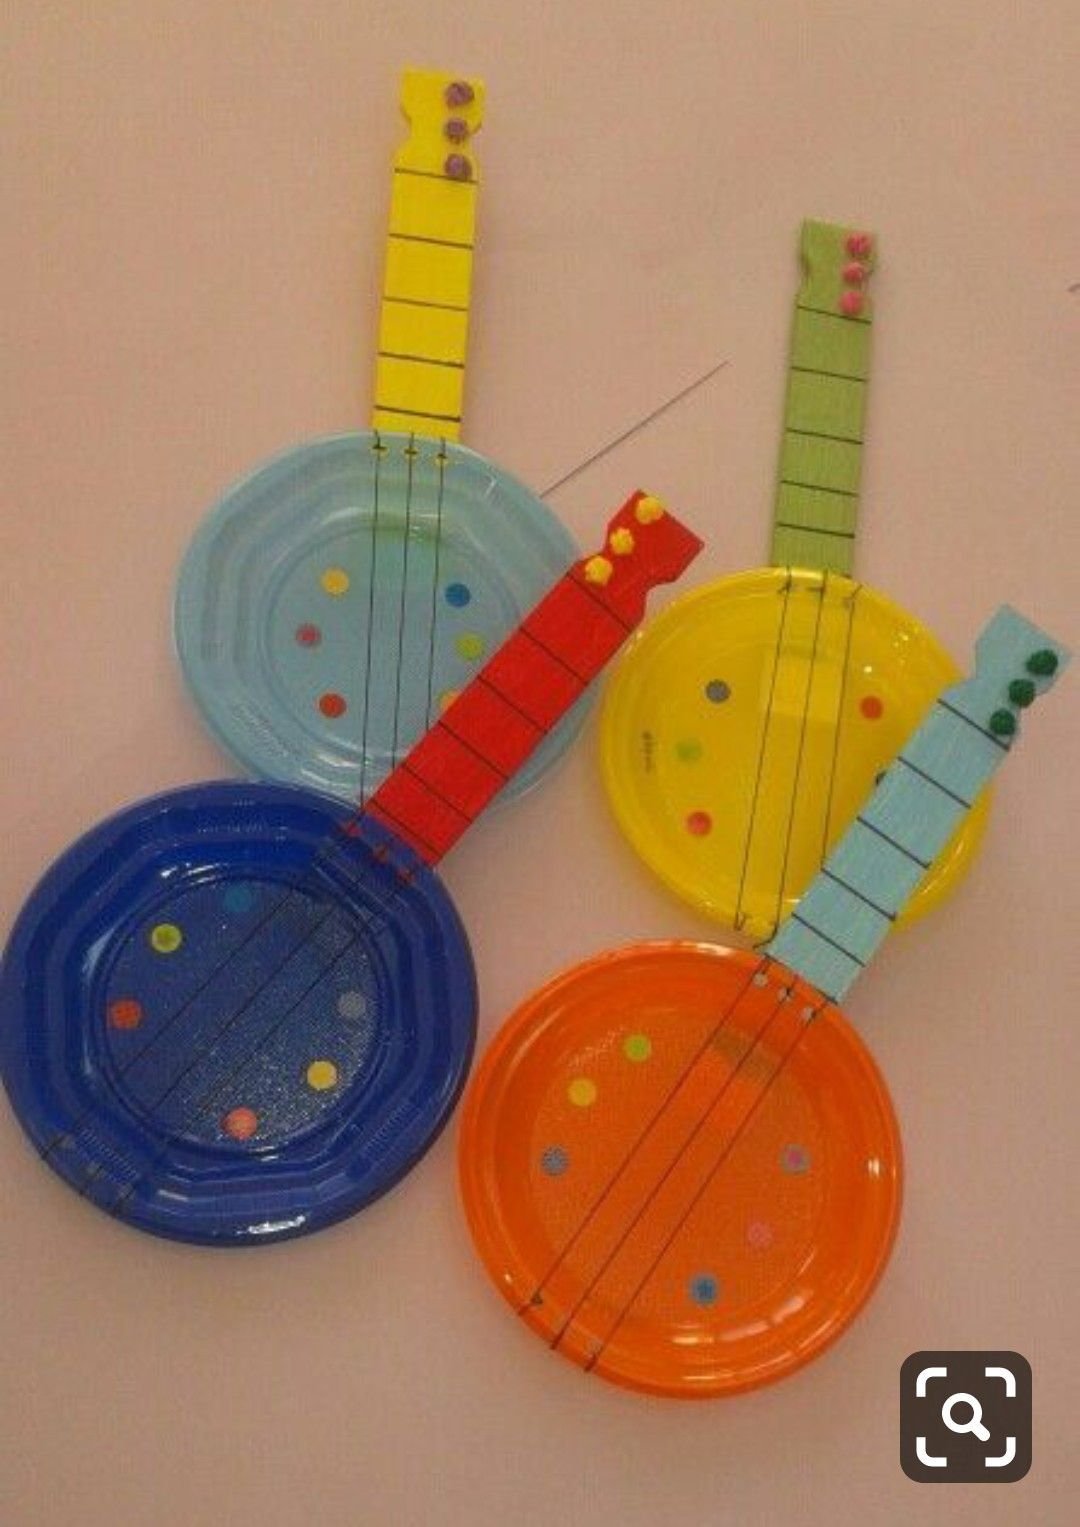 MAAM.ru: Музыкальные инструменты для музыкального уголка в детском саду свои�ми руками